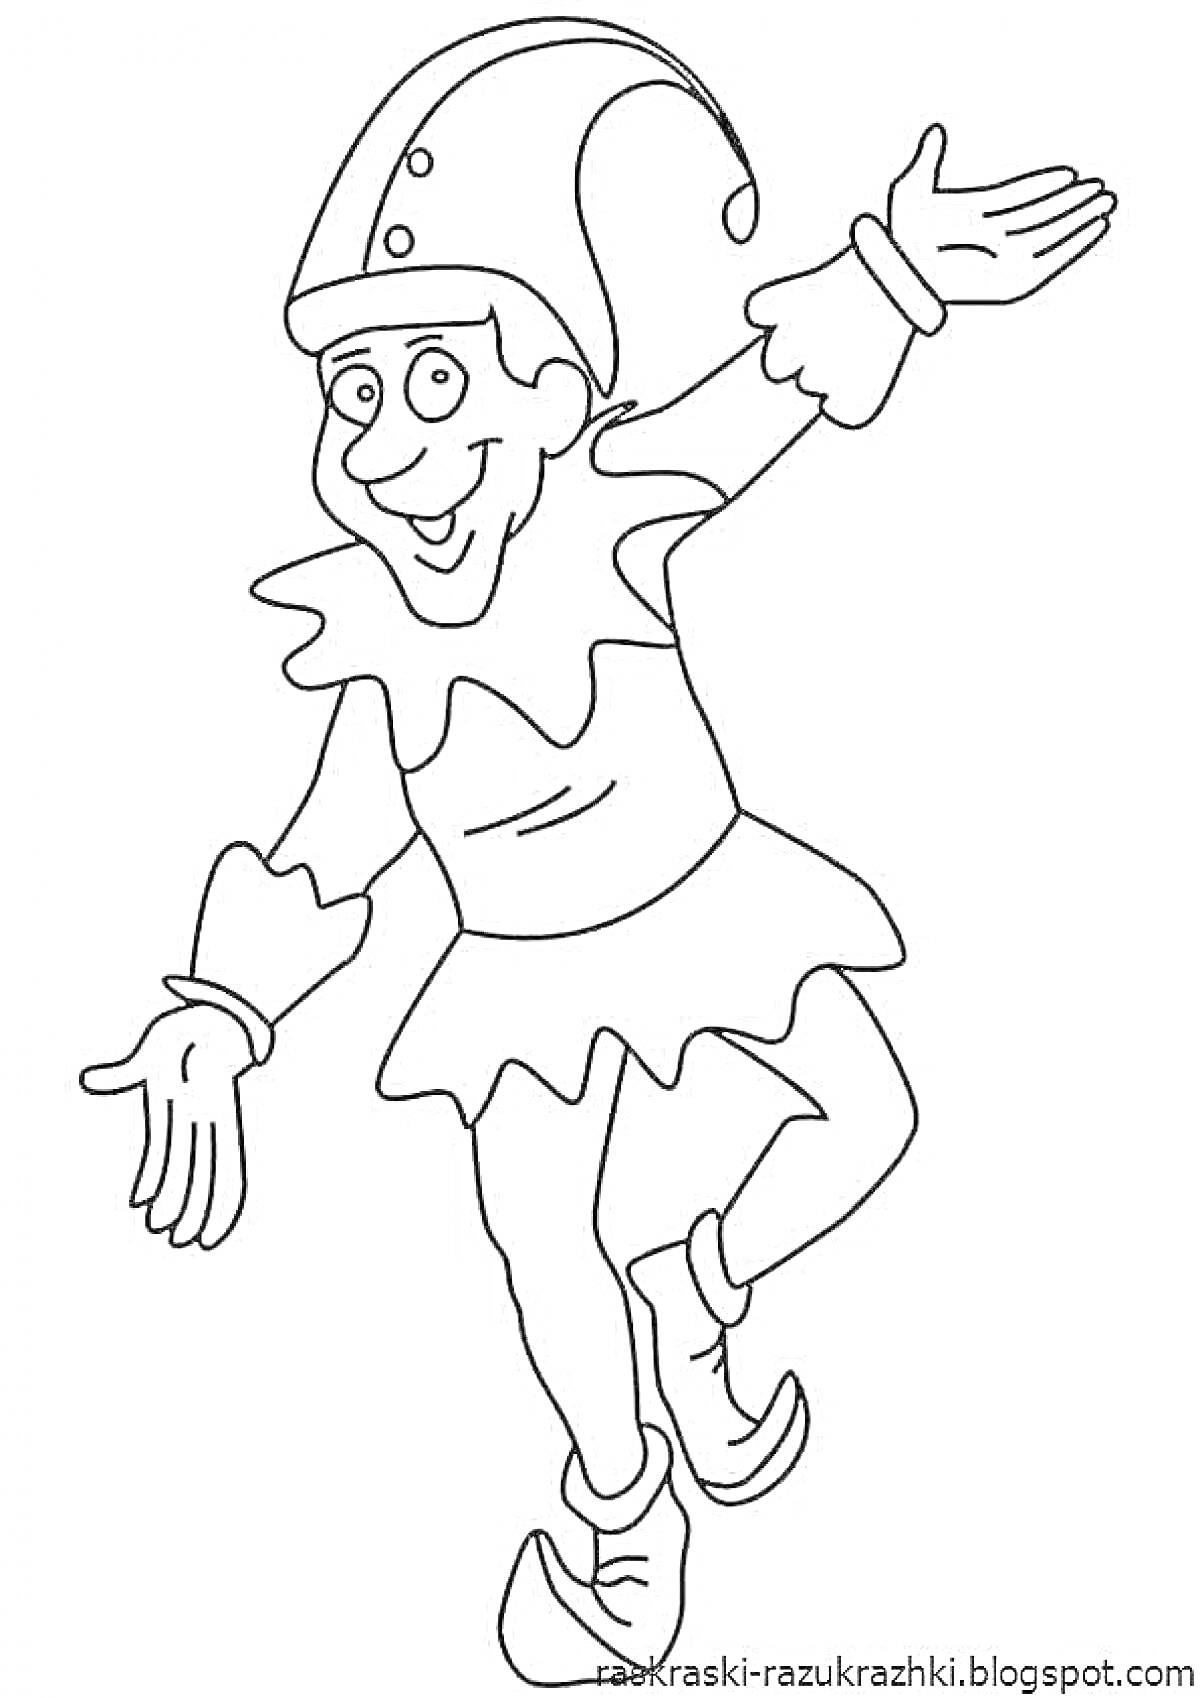 Раскраска Шут, танцующий в костюме с колпаком, пуговицами и манжетами, поднявший одну ногу и раскинувший руки в стороны